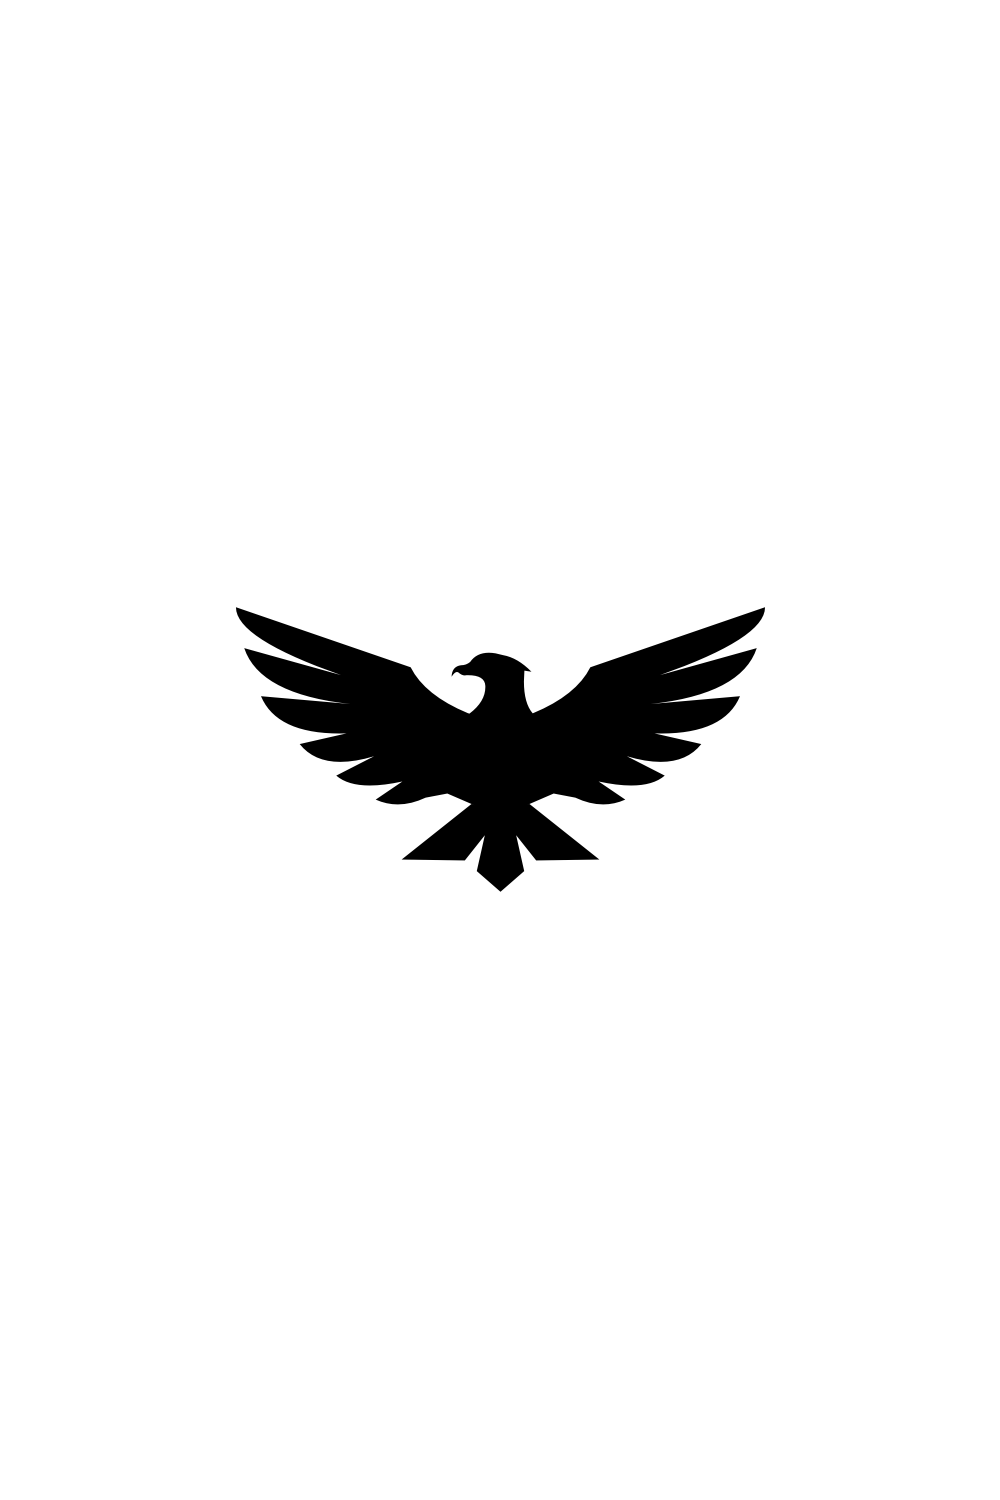 Eagle Bird Logo Template Vector Icon pinterest image.